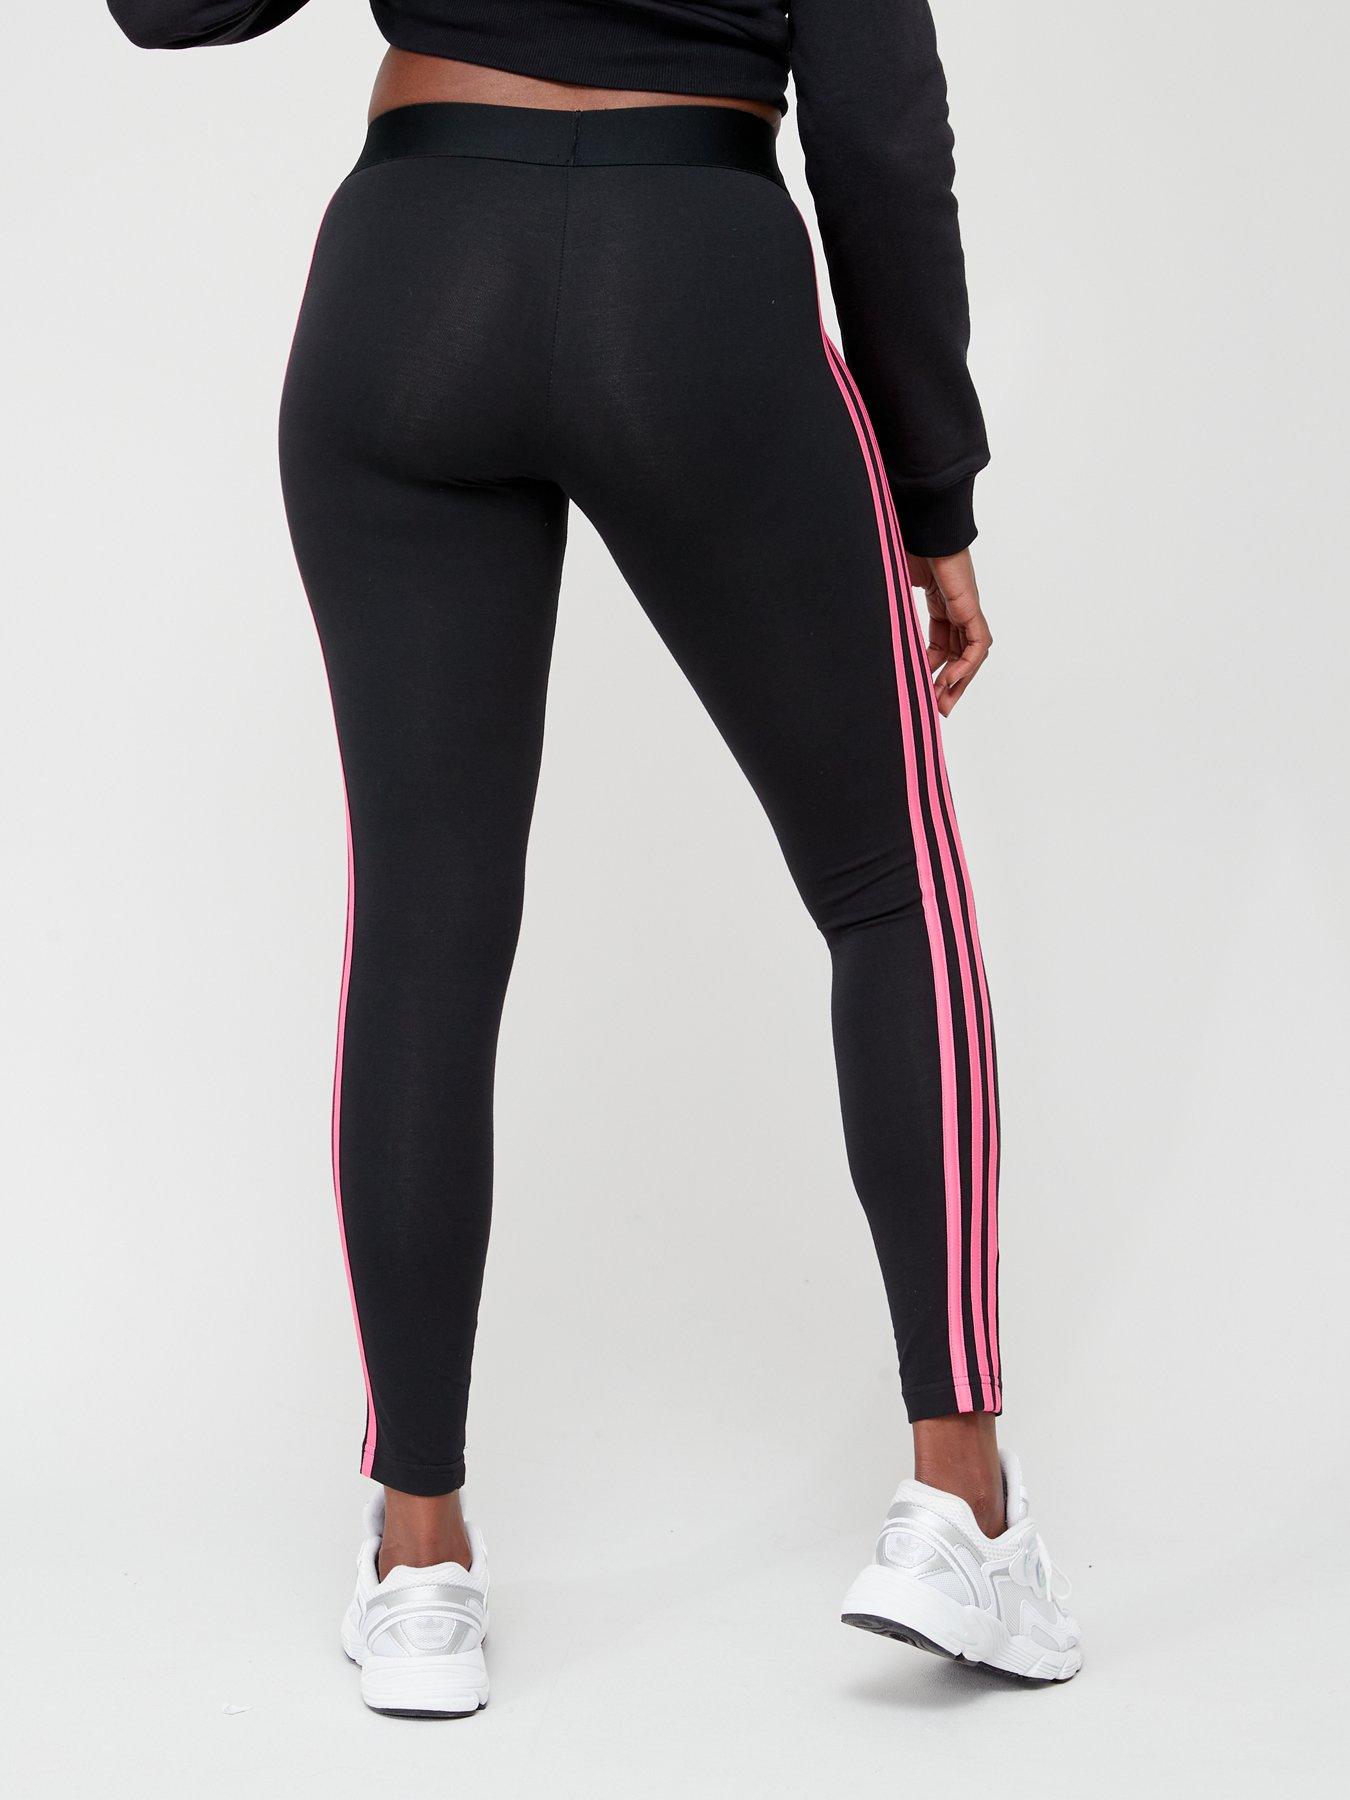 Nike Dri Fit Women's Capri Pants Size M Black Pink stripe